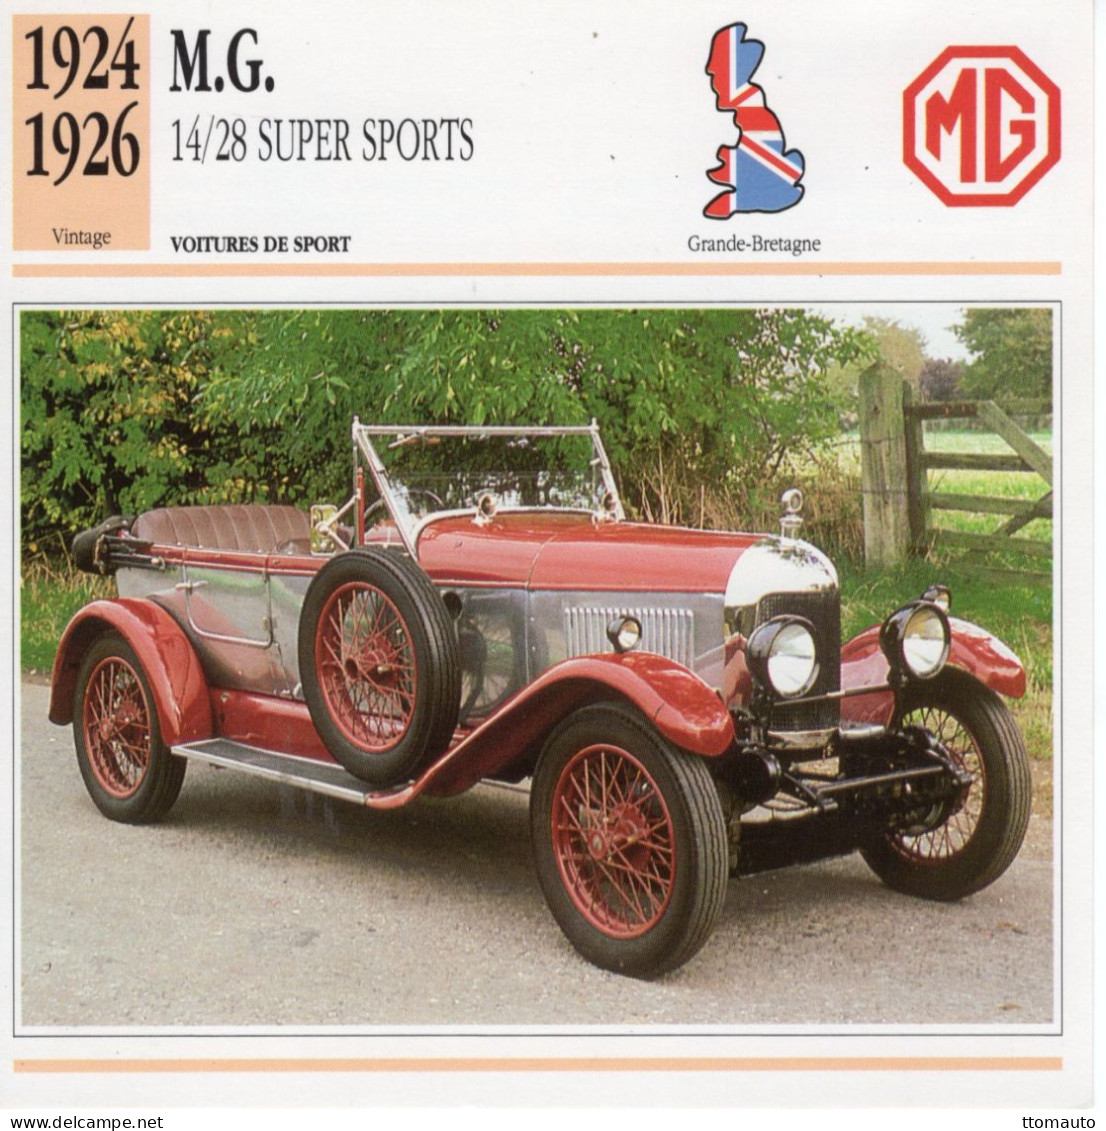 Fiche  -  Voiture De Sport  -  M.G. 14/28 Super Sports  (1926)   -  Carte De Collection - Cars